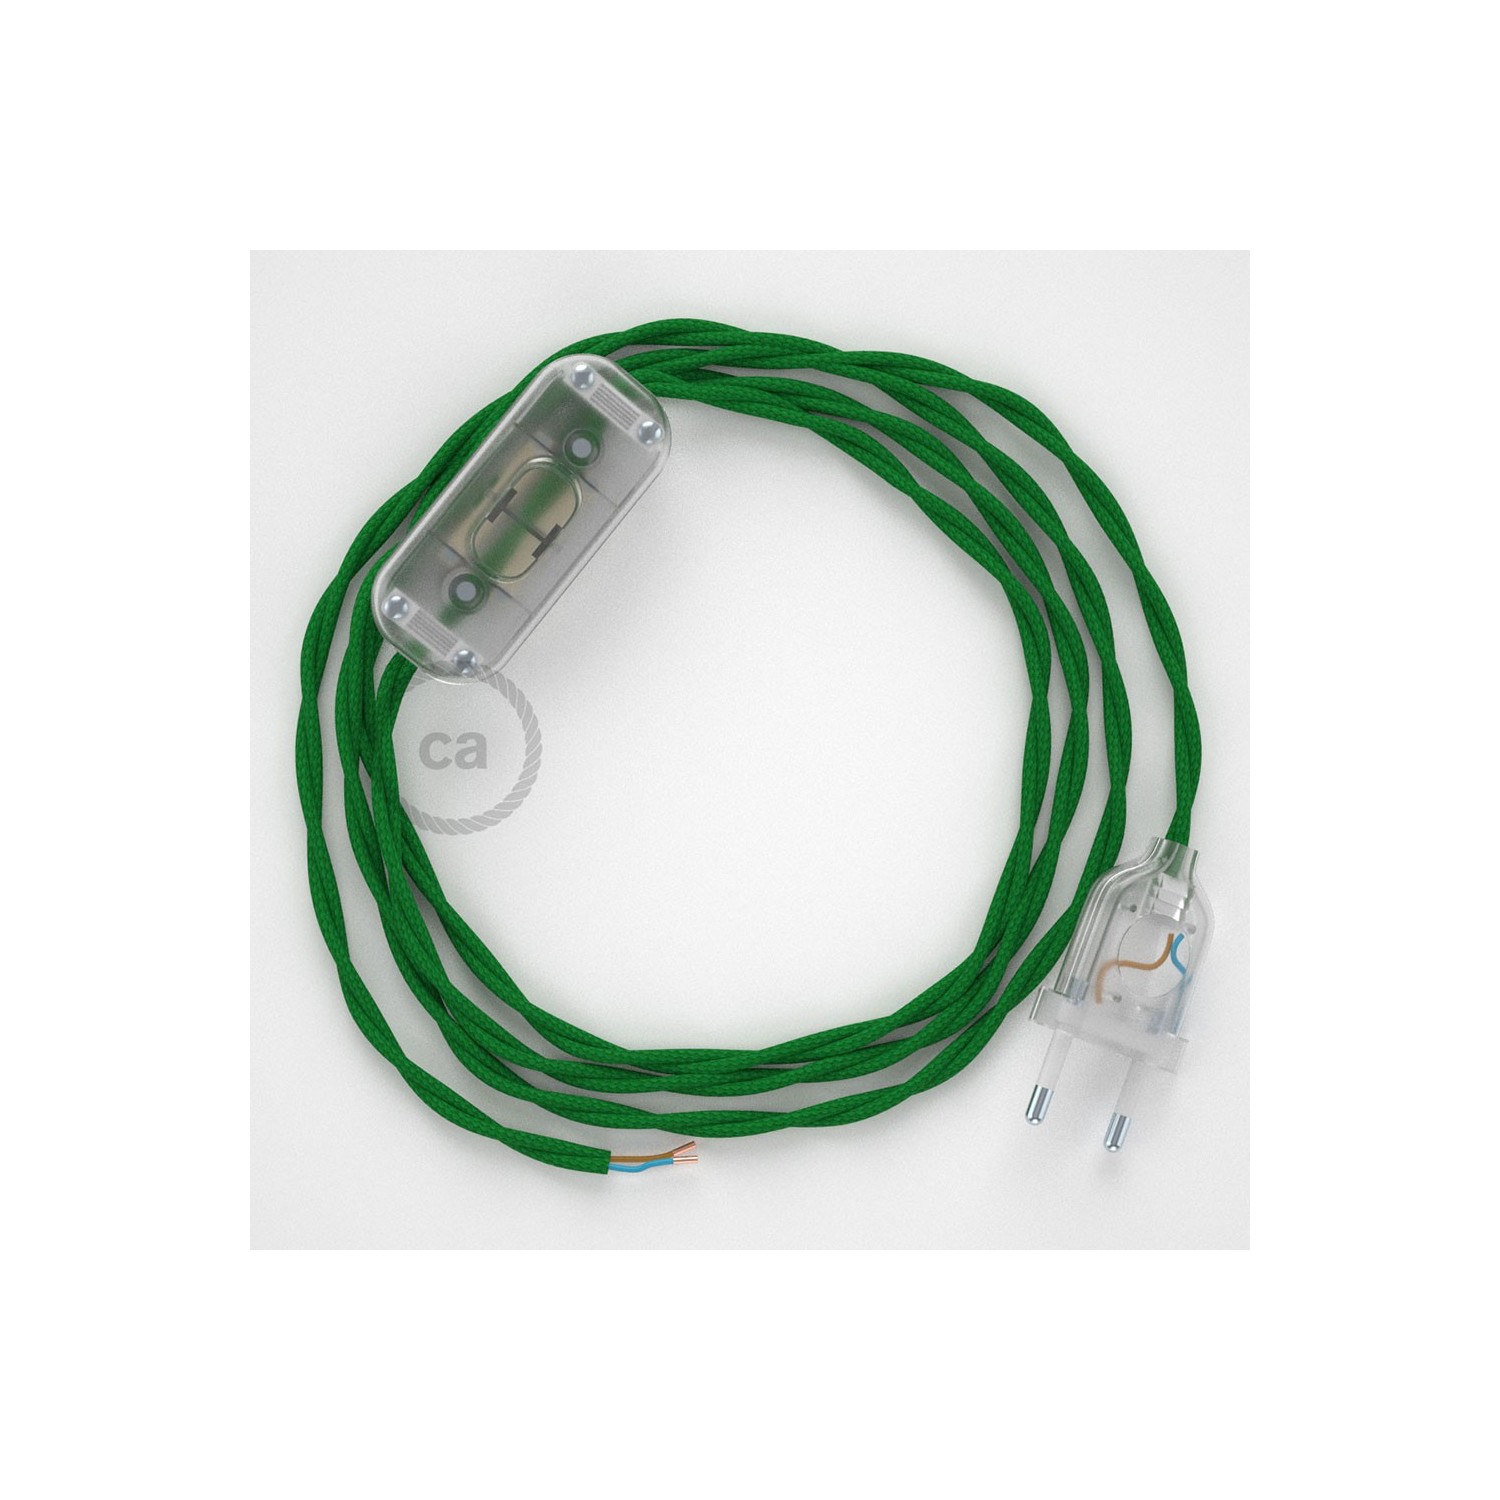 Sladdställ, TM06 Grön Viskos 1,80 m. Välj färg på strömbrytare och kontakt